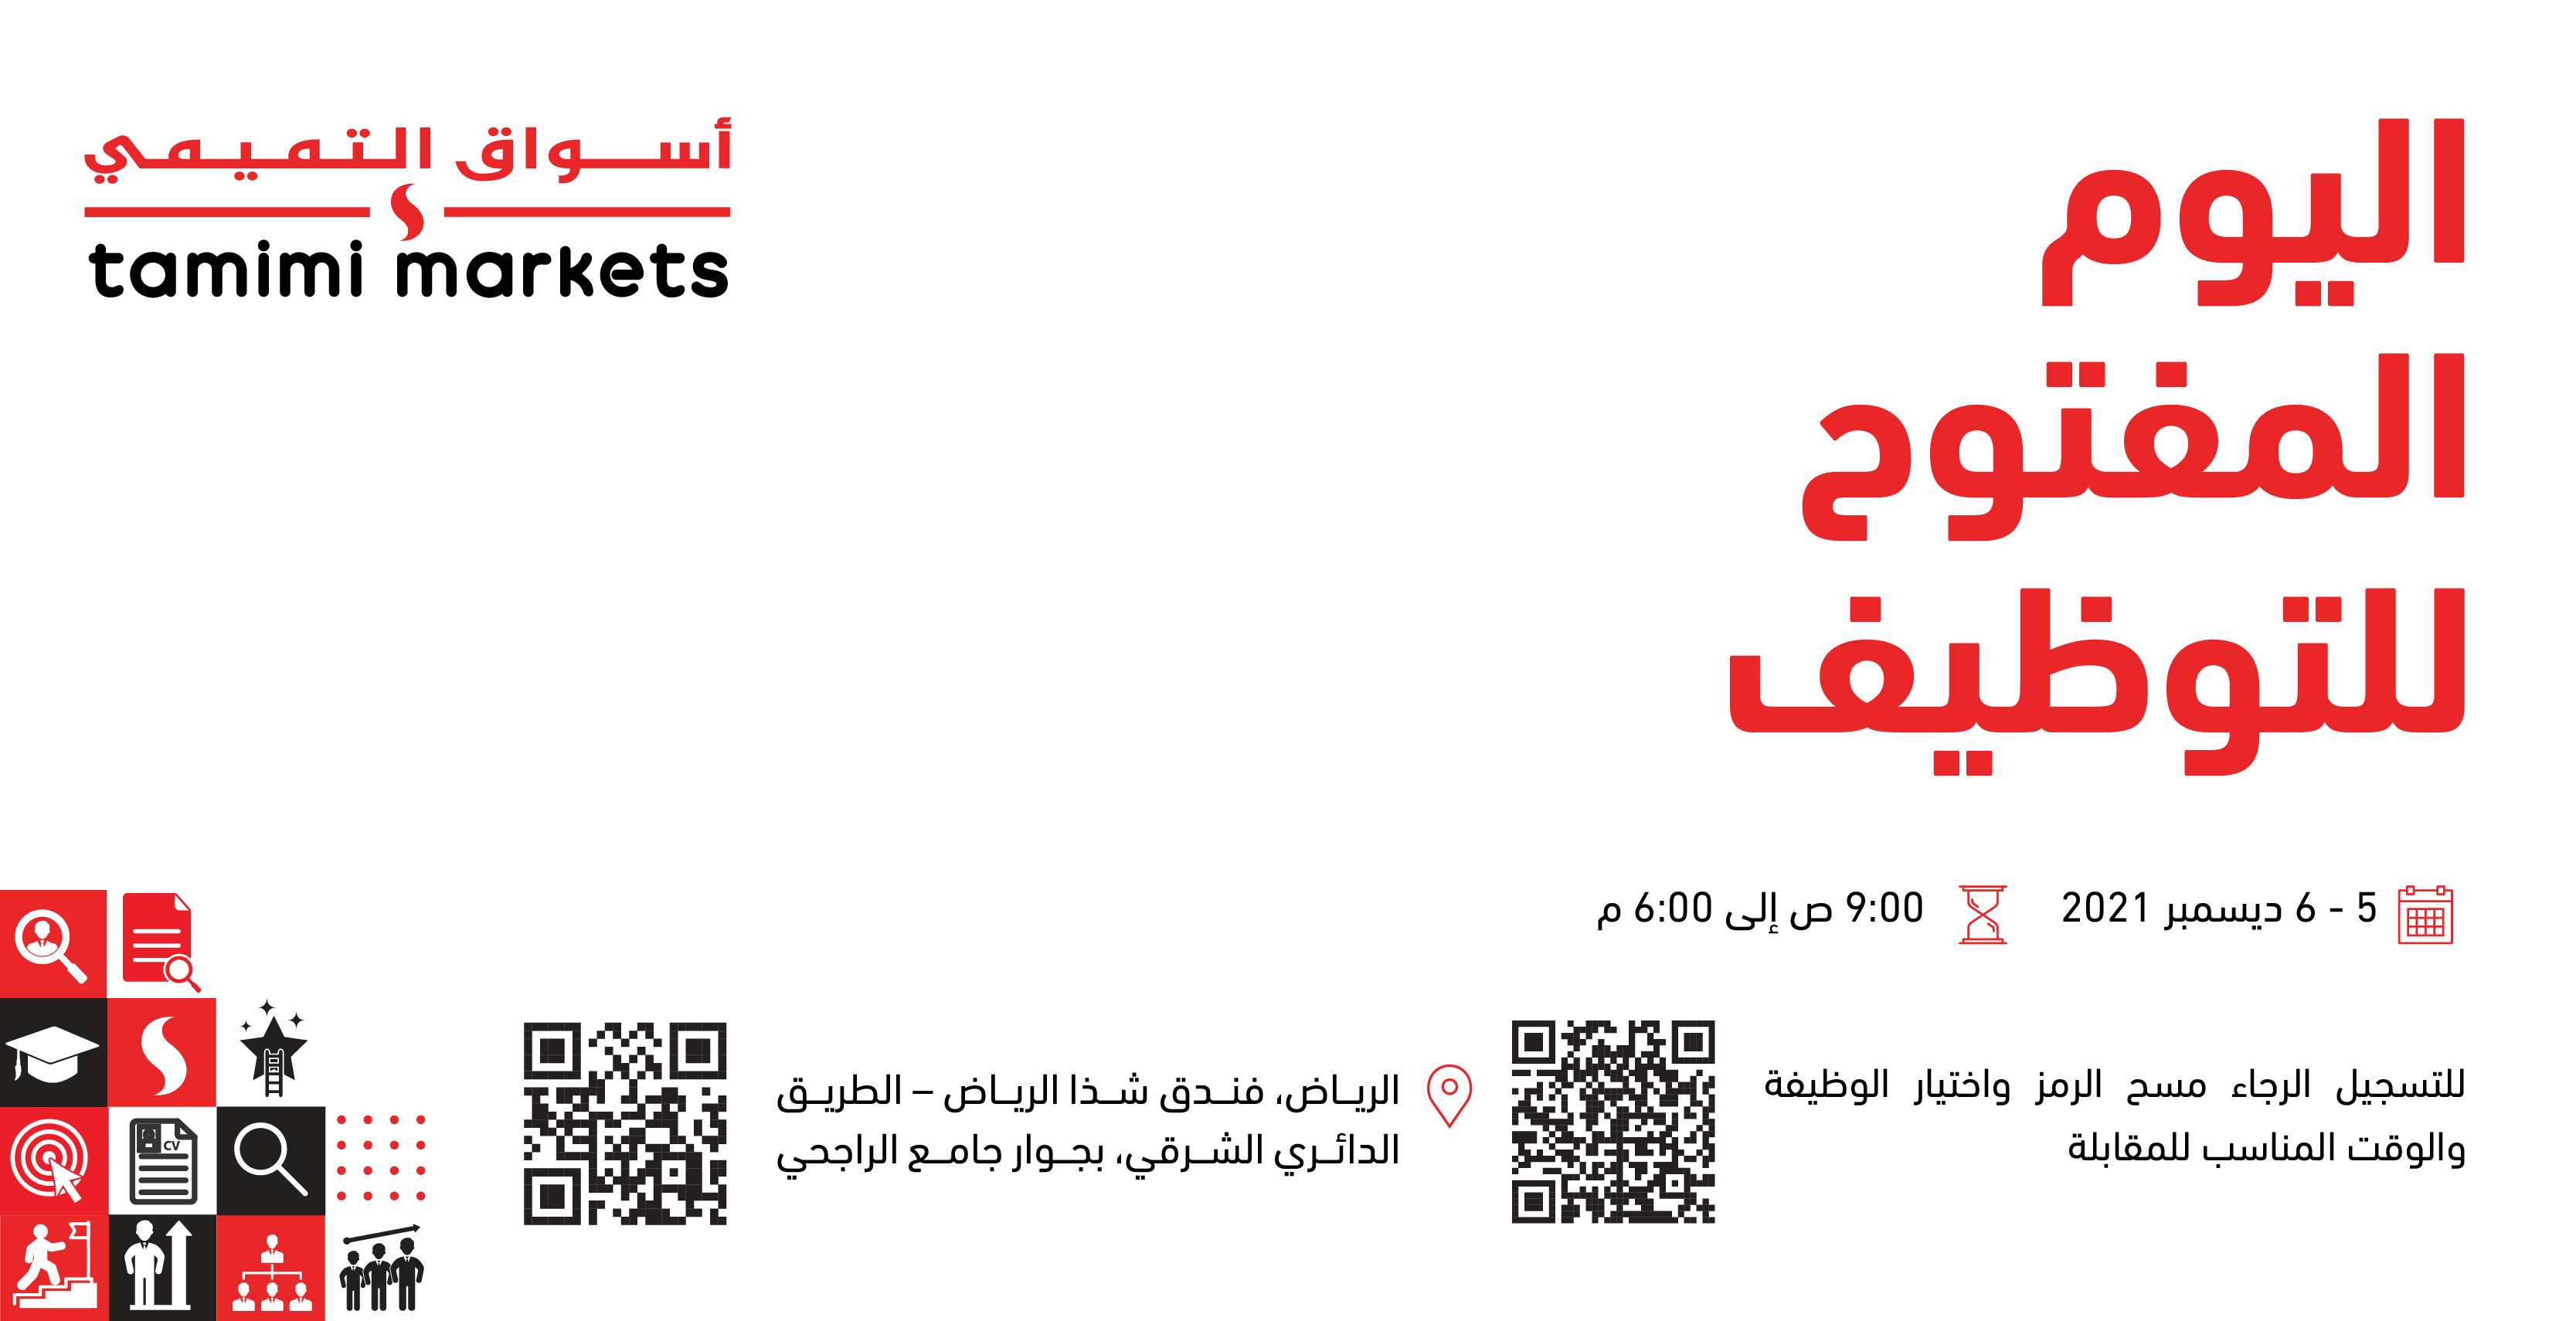 أسواق التميمي on Twitter: "#وظائف #أسواق_التميمي #الرياض  https://t.co/76Q10gnHjk" / Twitter